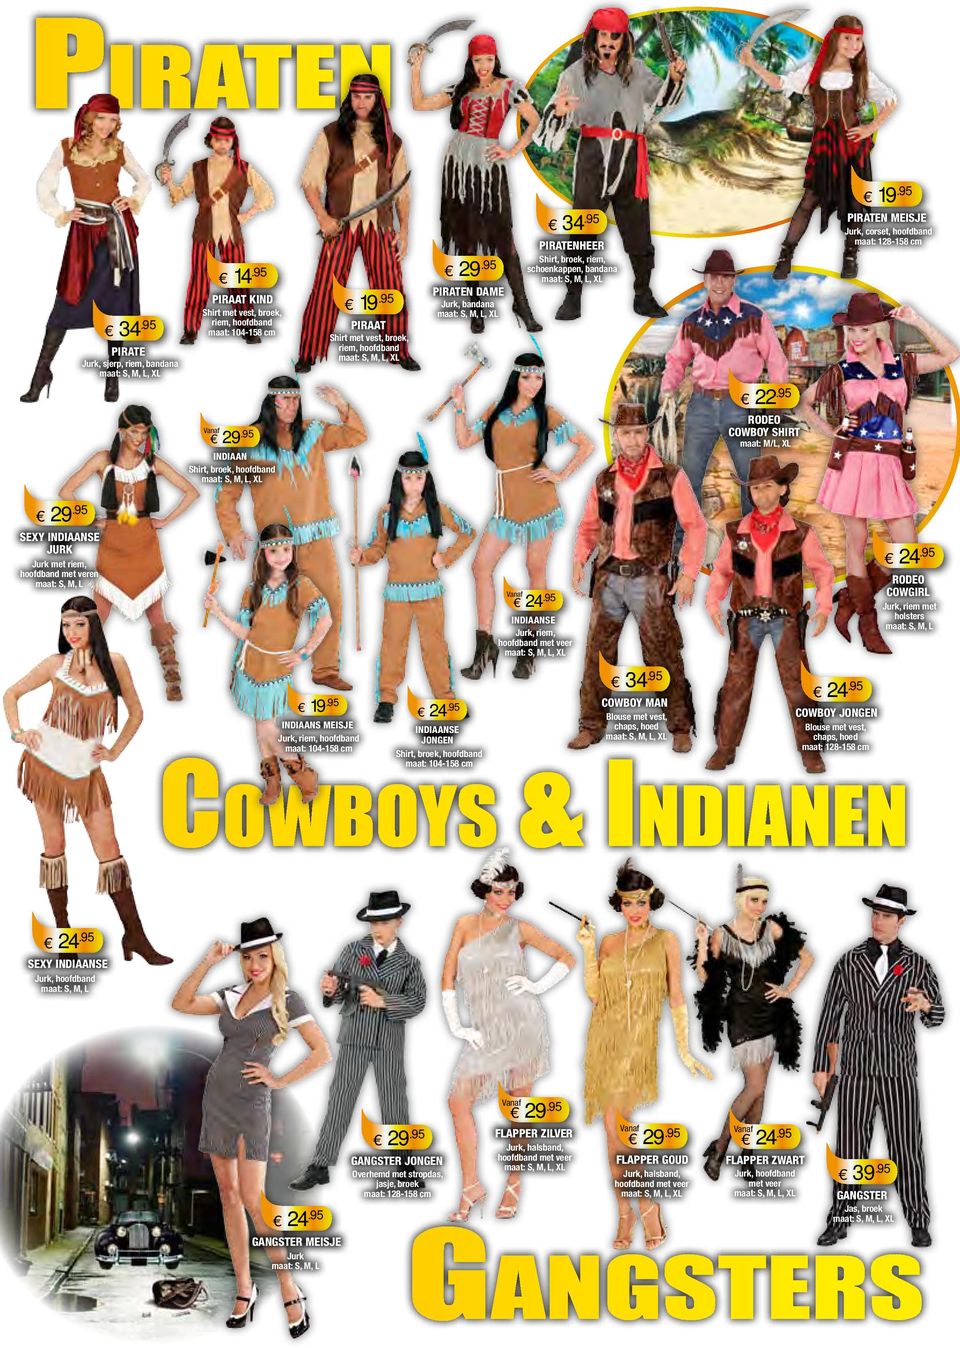 holsters INDIAANS MEISJE Jurk, riem, INDIAANSE JONGEN Shirt, broek, 34 COWBOY MAN Blouse met vest, chaps, hoed COWBOY JONGEN Blouse met vest, chaps, hoed Cowboys & Indianen SEXY INDIAANSE Jurk,